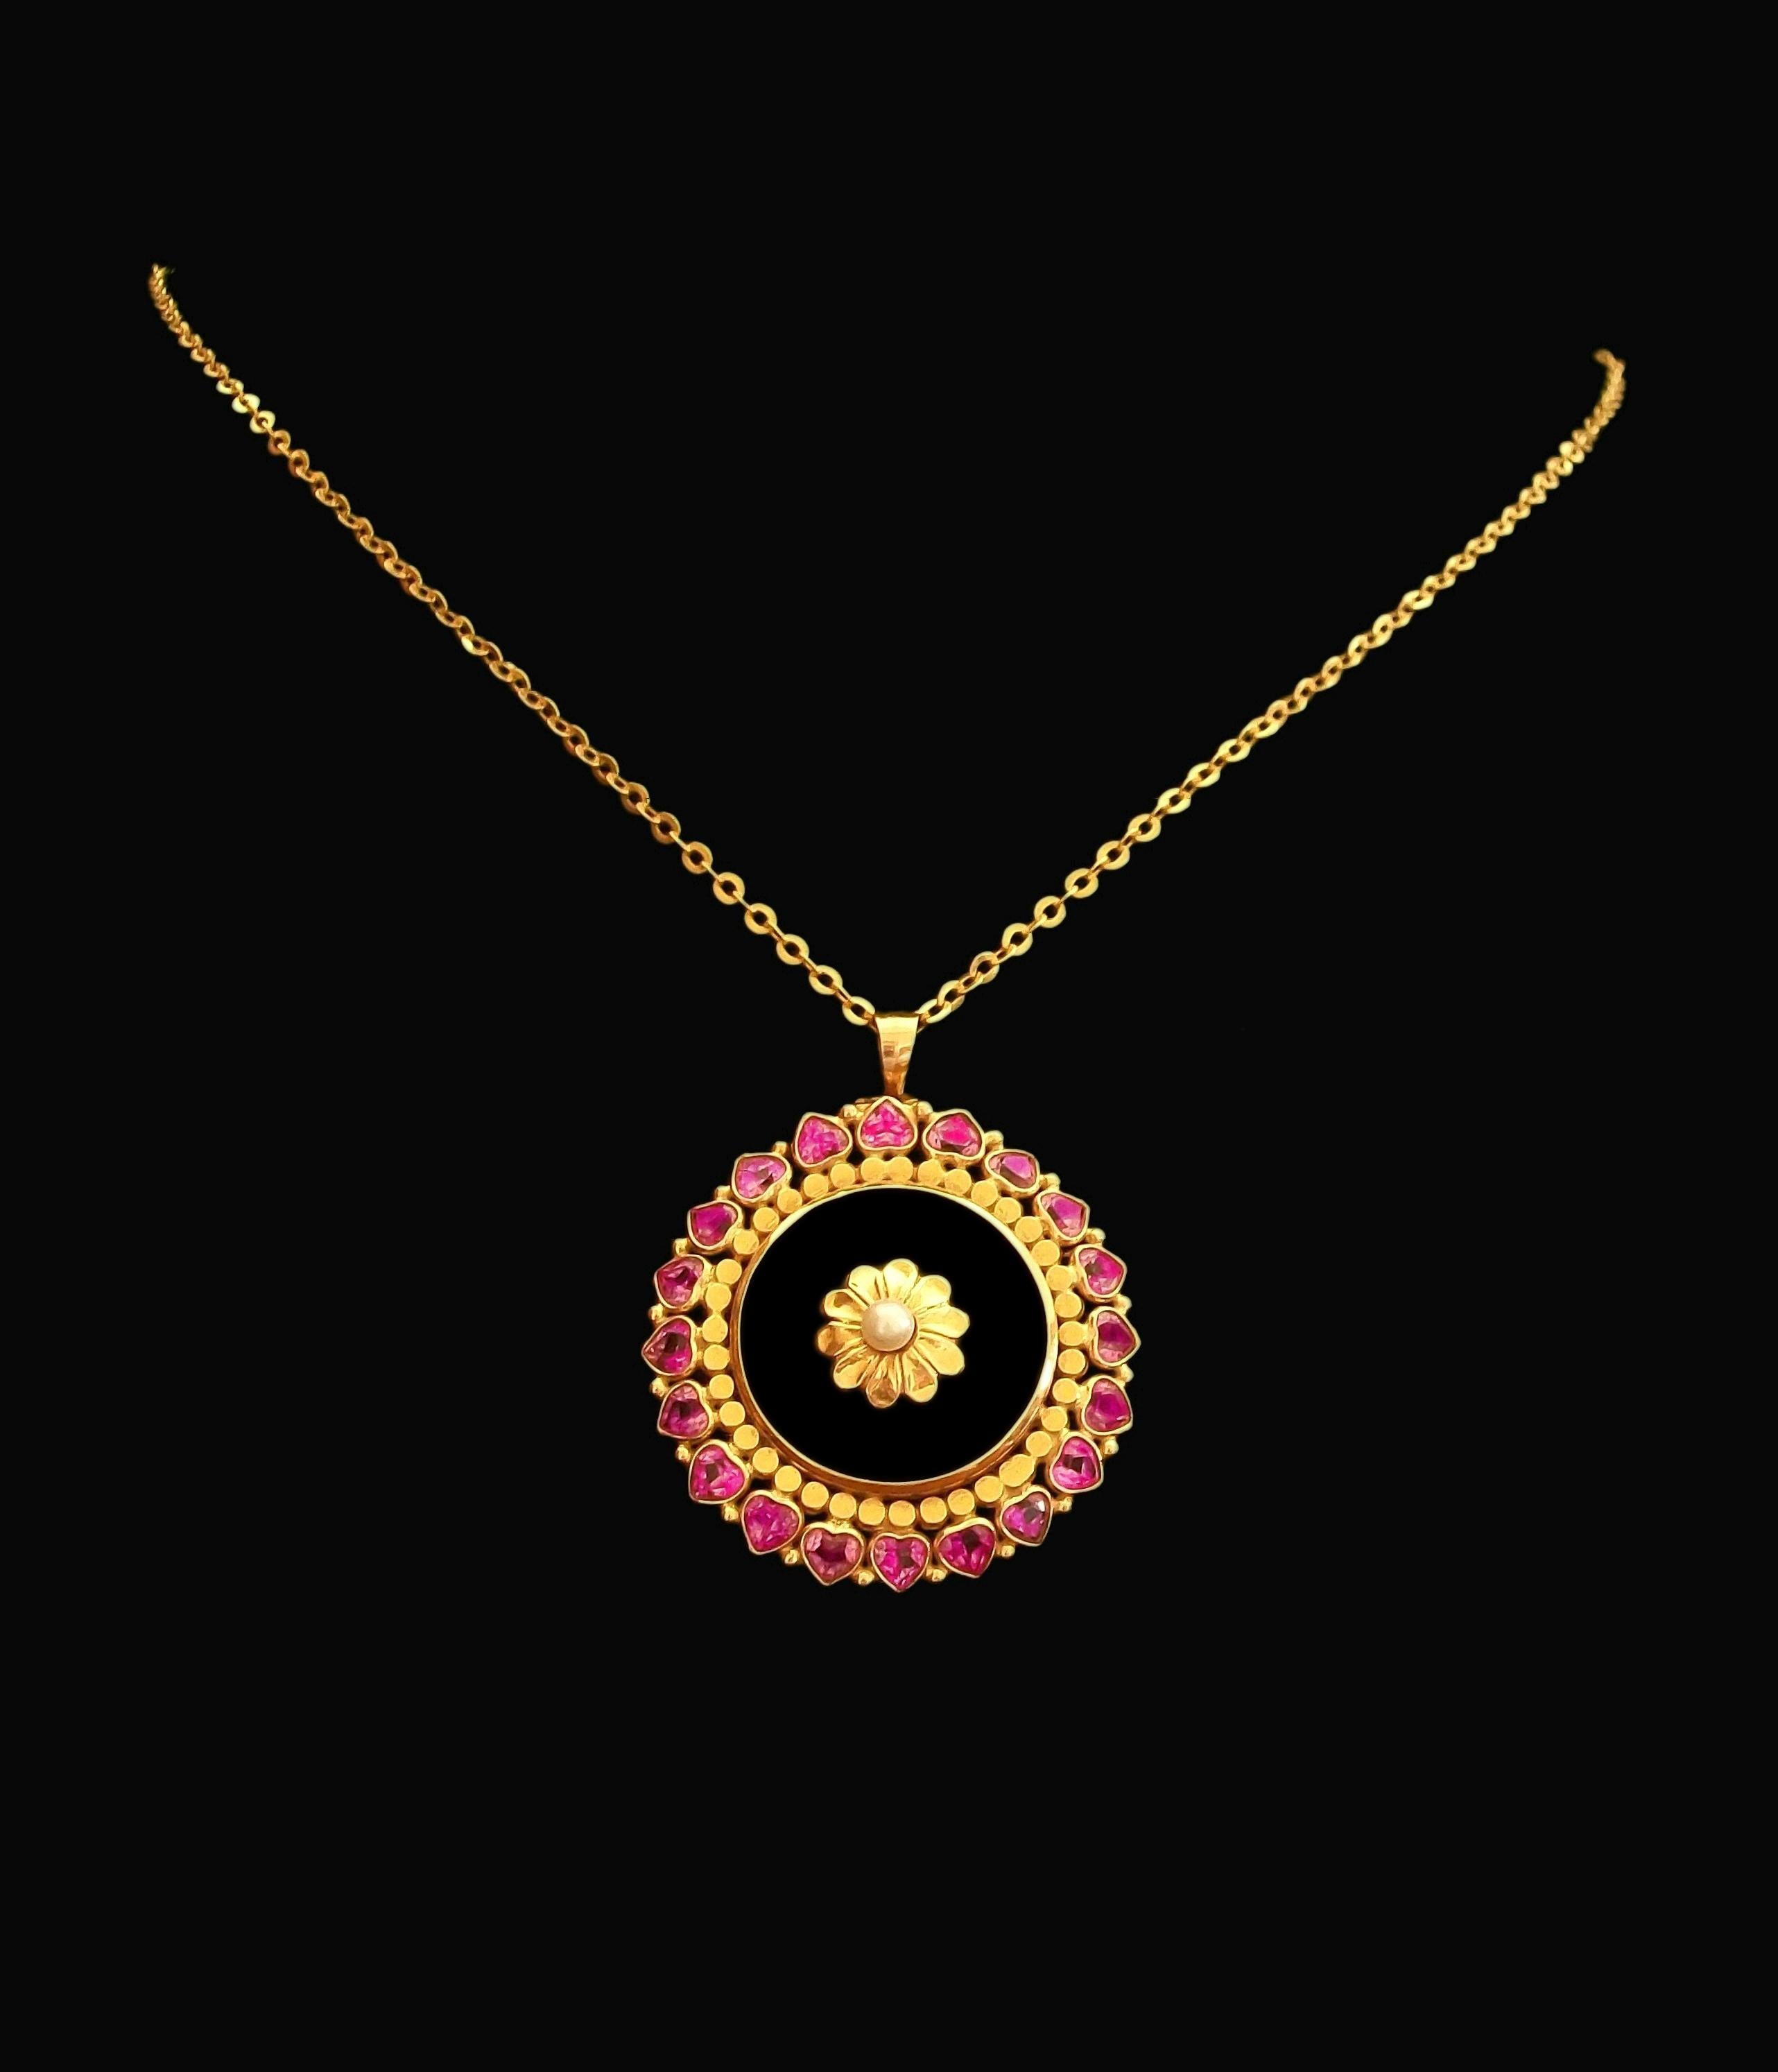 Art Deco 18K Gelbgold Kreis Anhänger - der Umfang mit 20 herzförmigen Lünette gesetzt Pink Sapphires (jeweils 3,5 mm. x 4 mm. x 2,5 mm. tief - ca. 0,23 Karat pro Stück - 4,6 Karat insgesamt) gegen eine solide Goldkreis Grenze gesetzt - natürliche